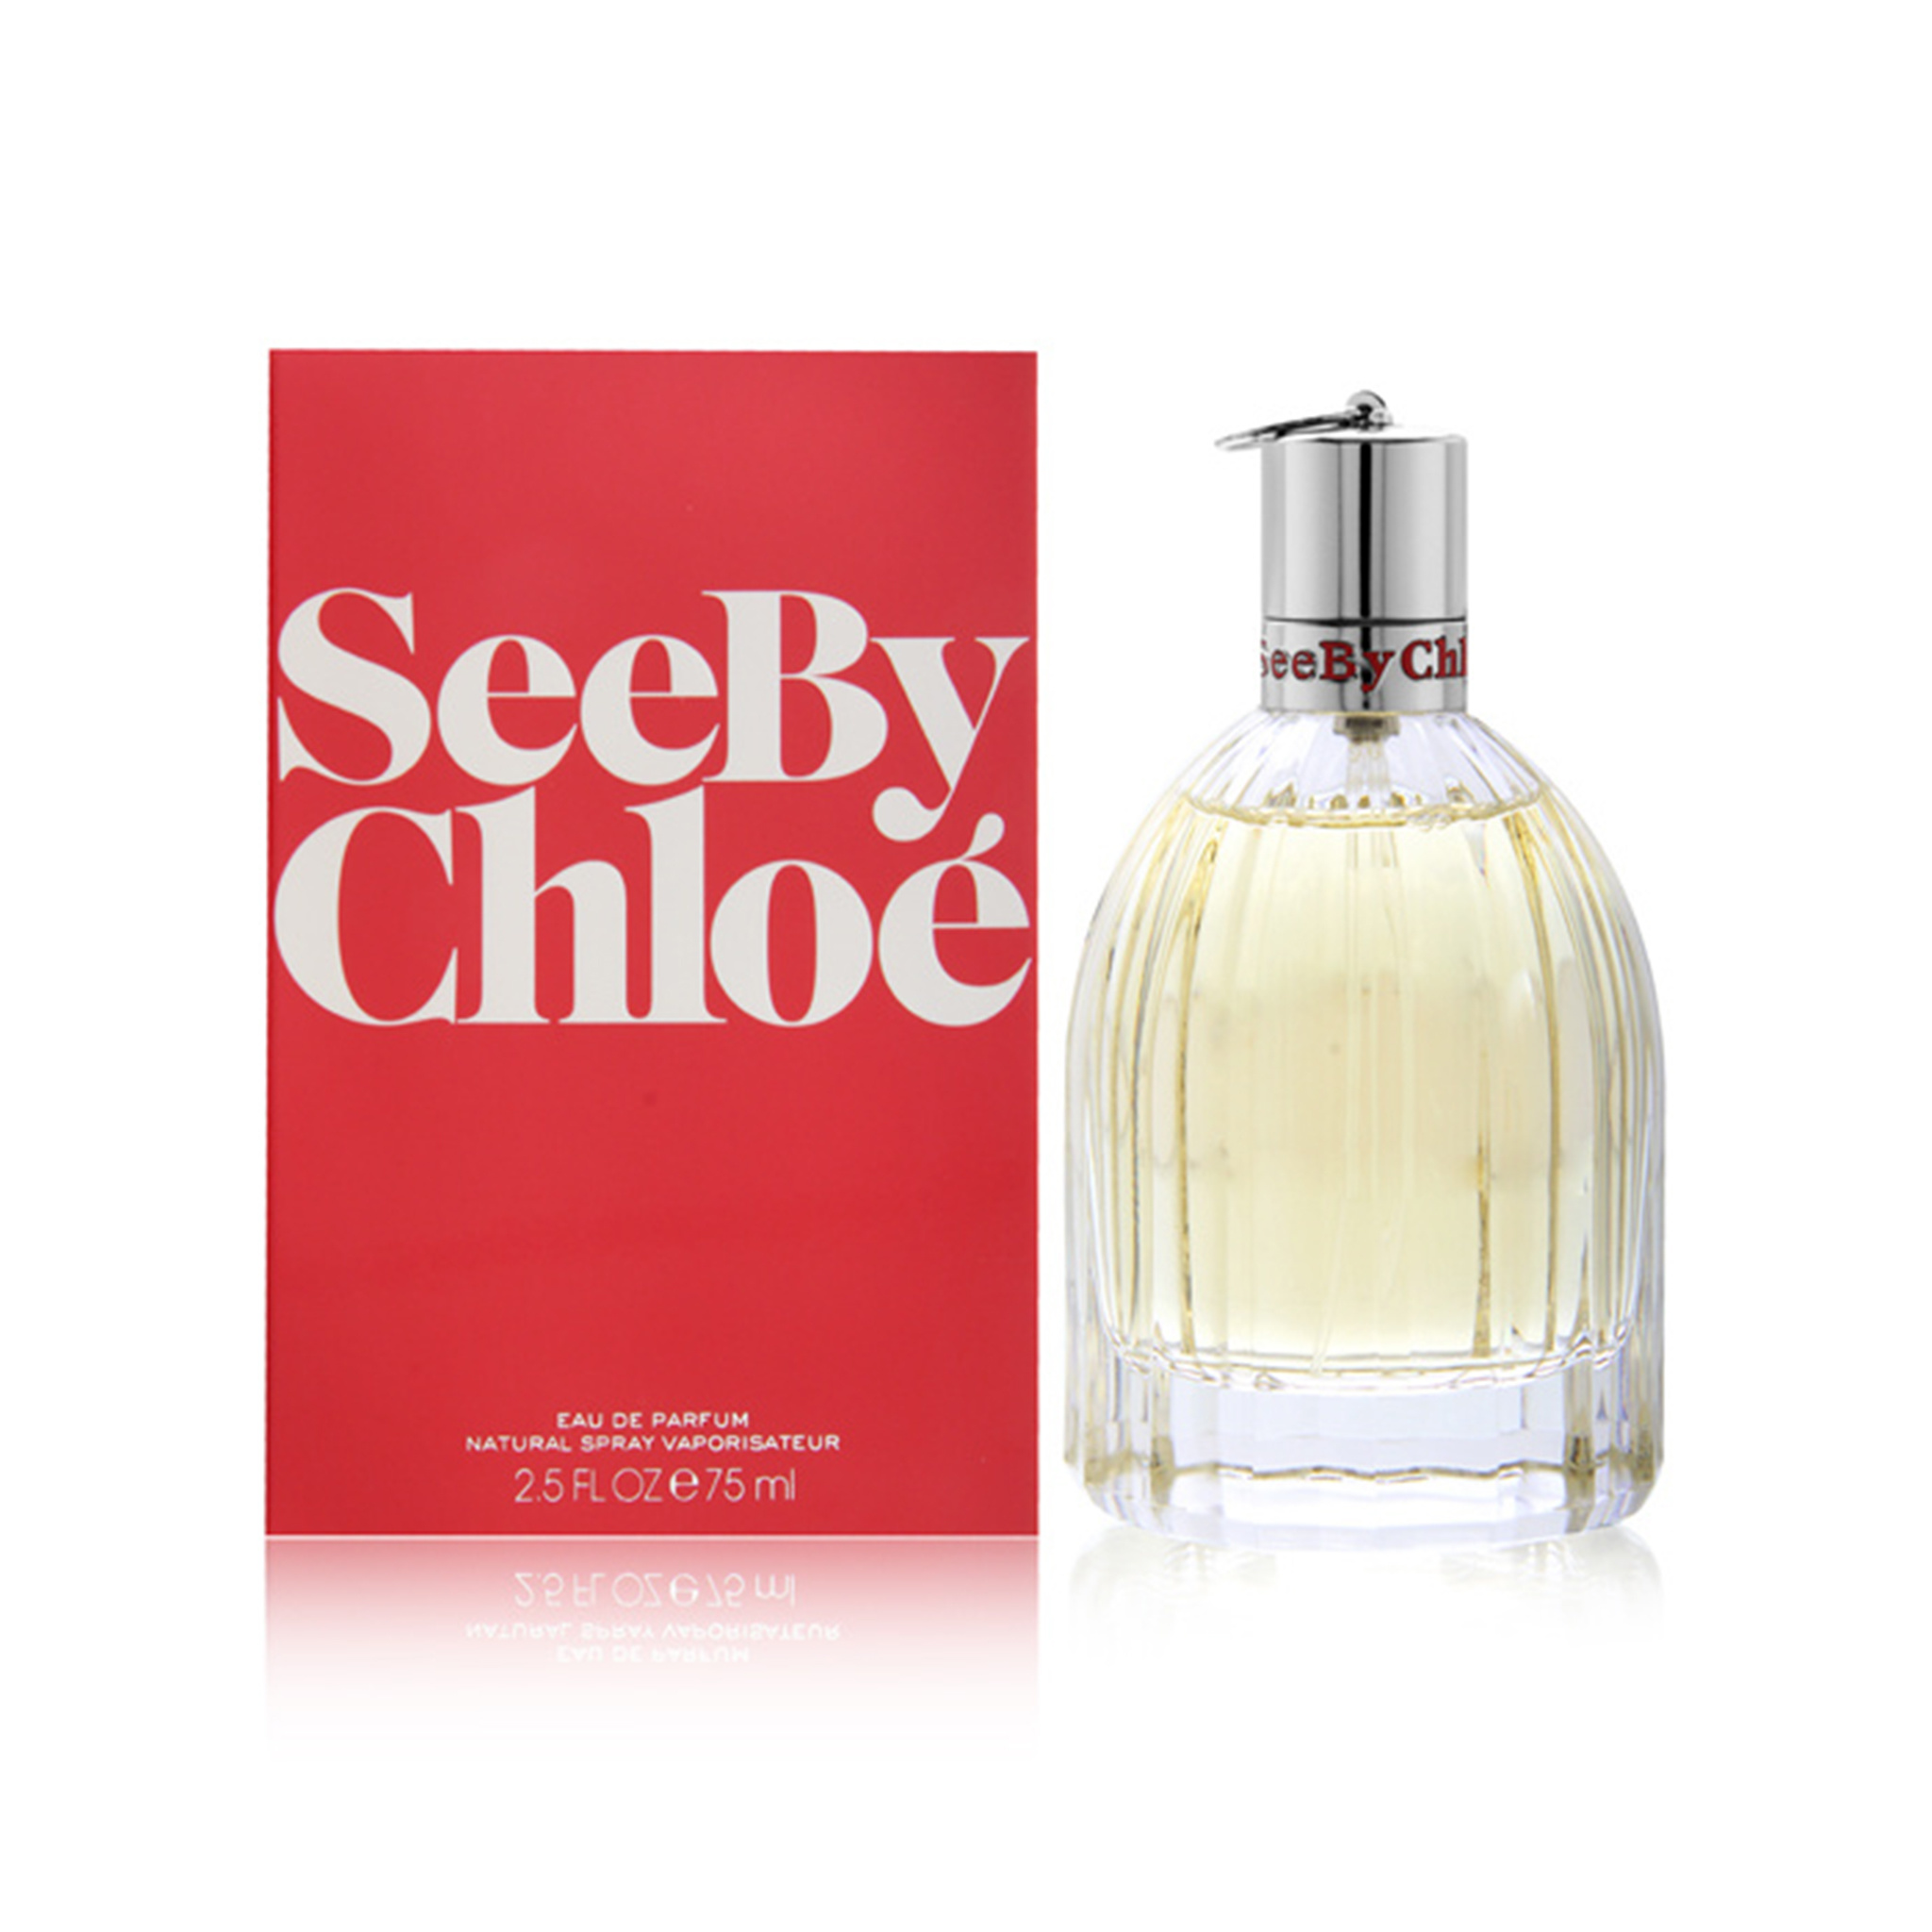 See Chloe Eau de Parfum Parfumerie